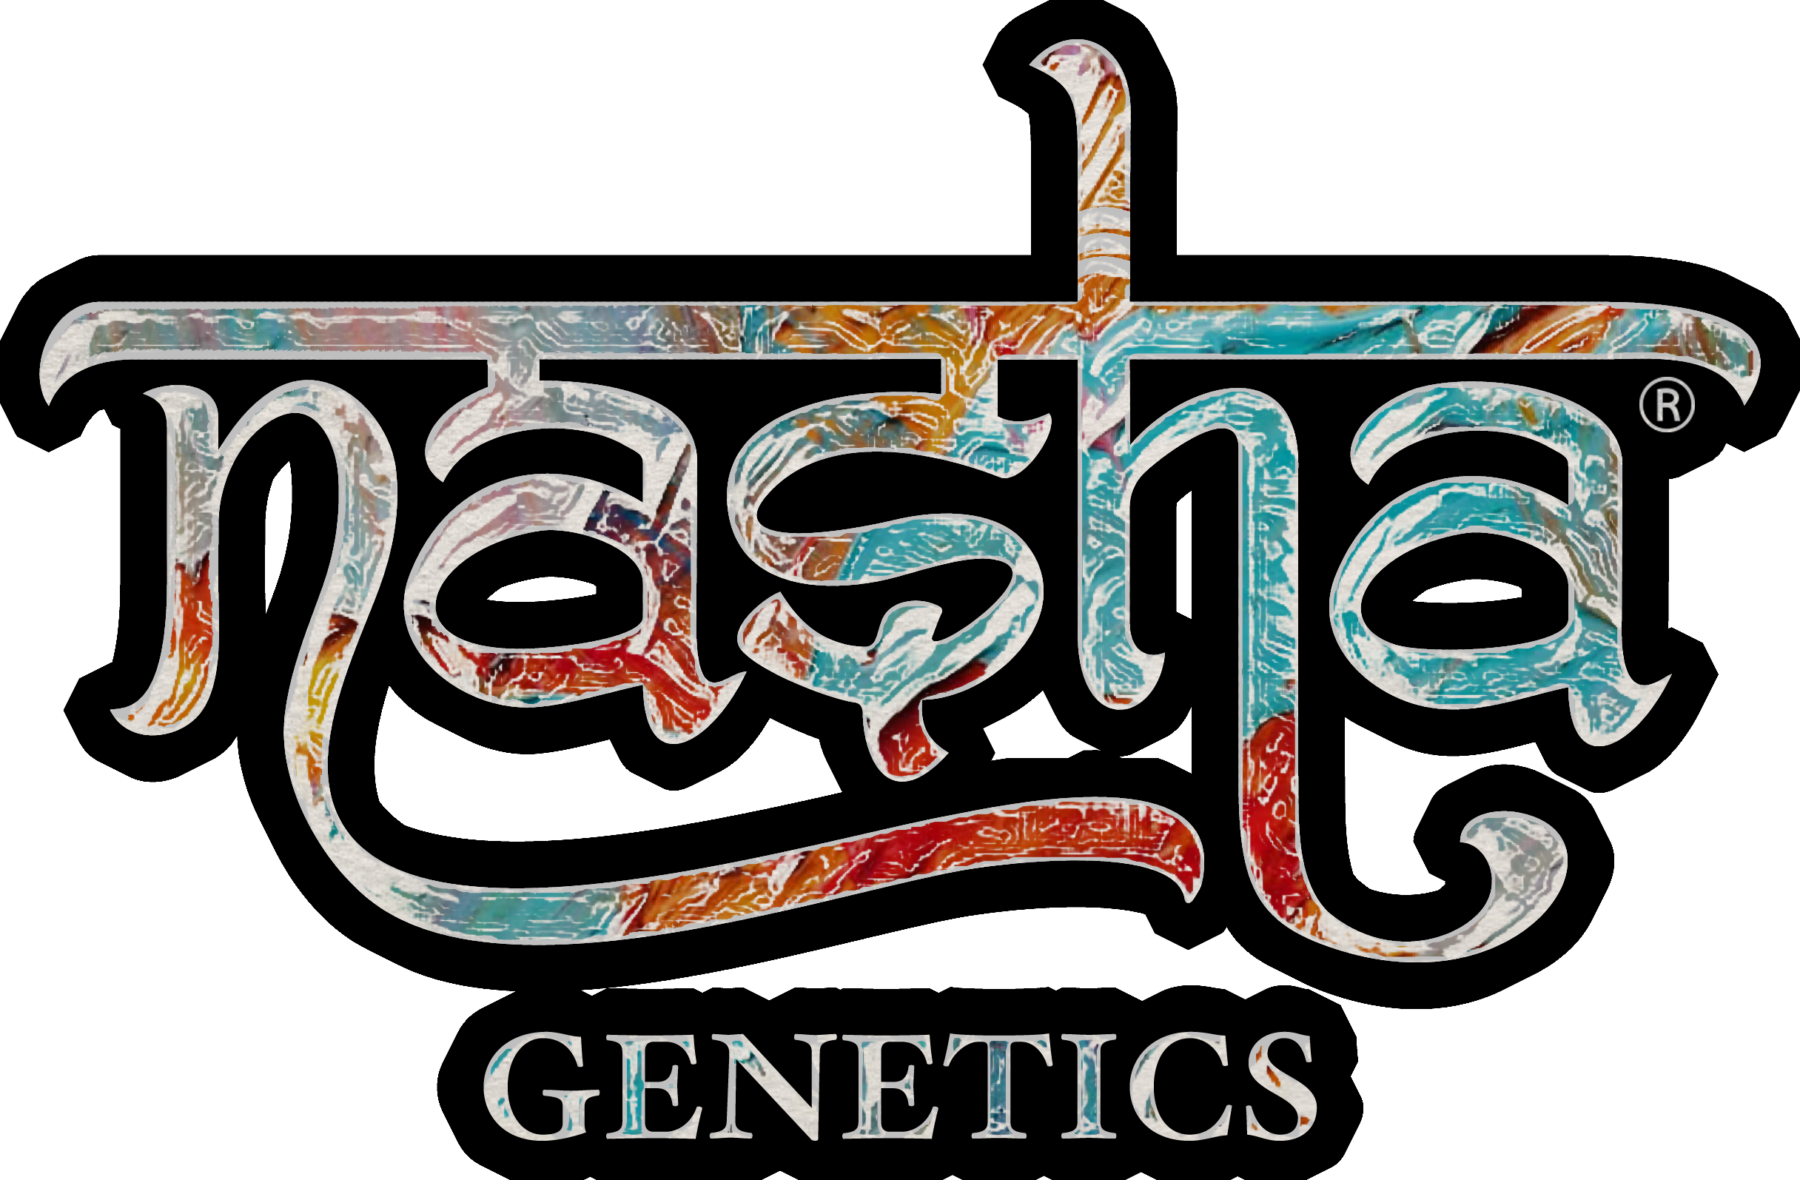 Nasha Genetics